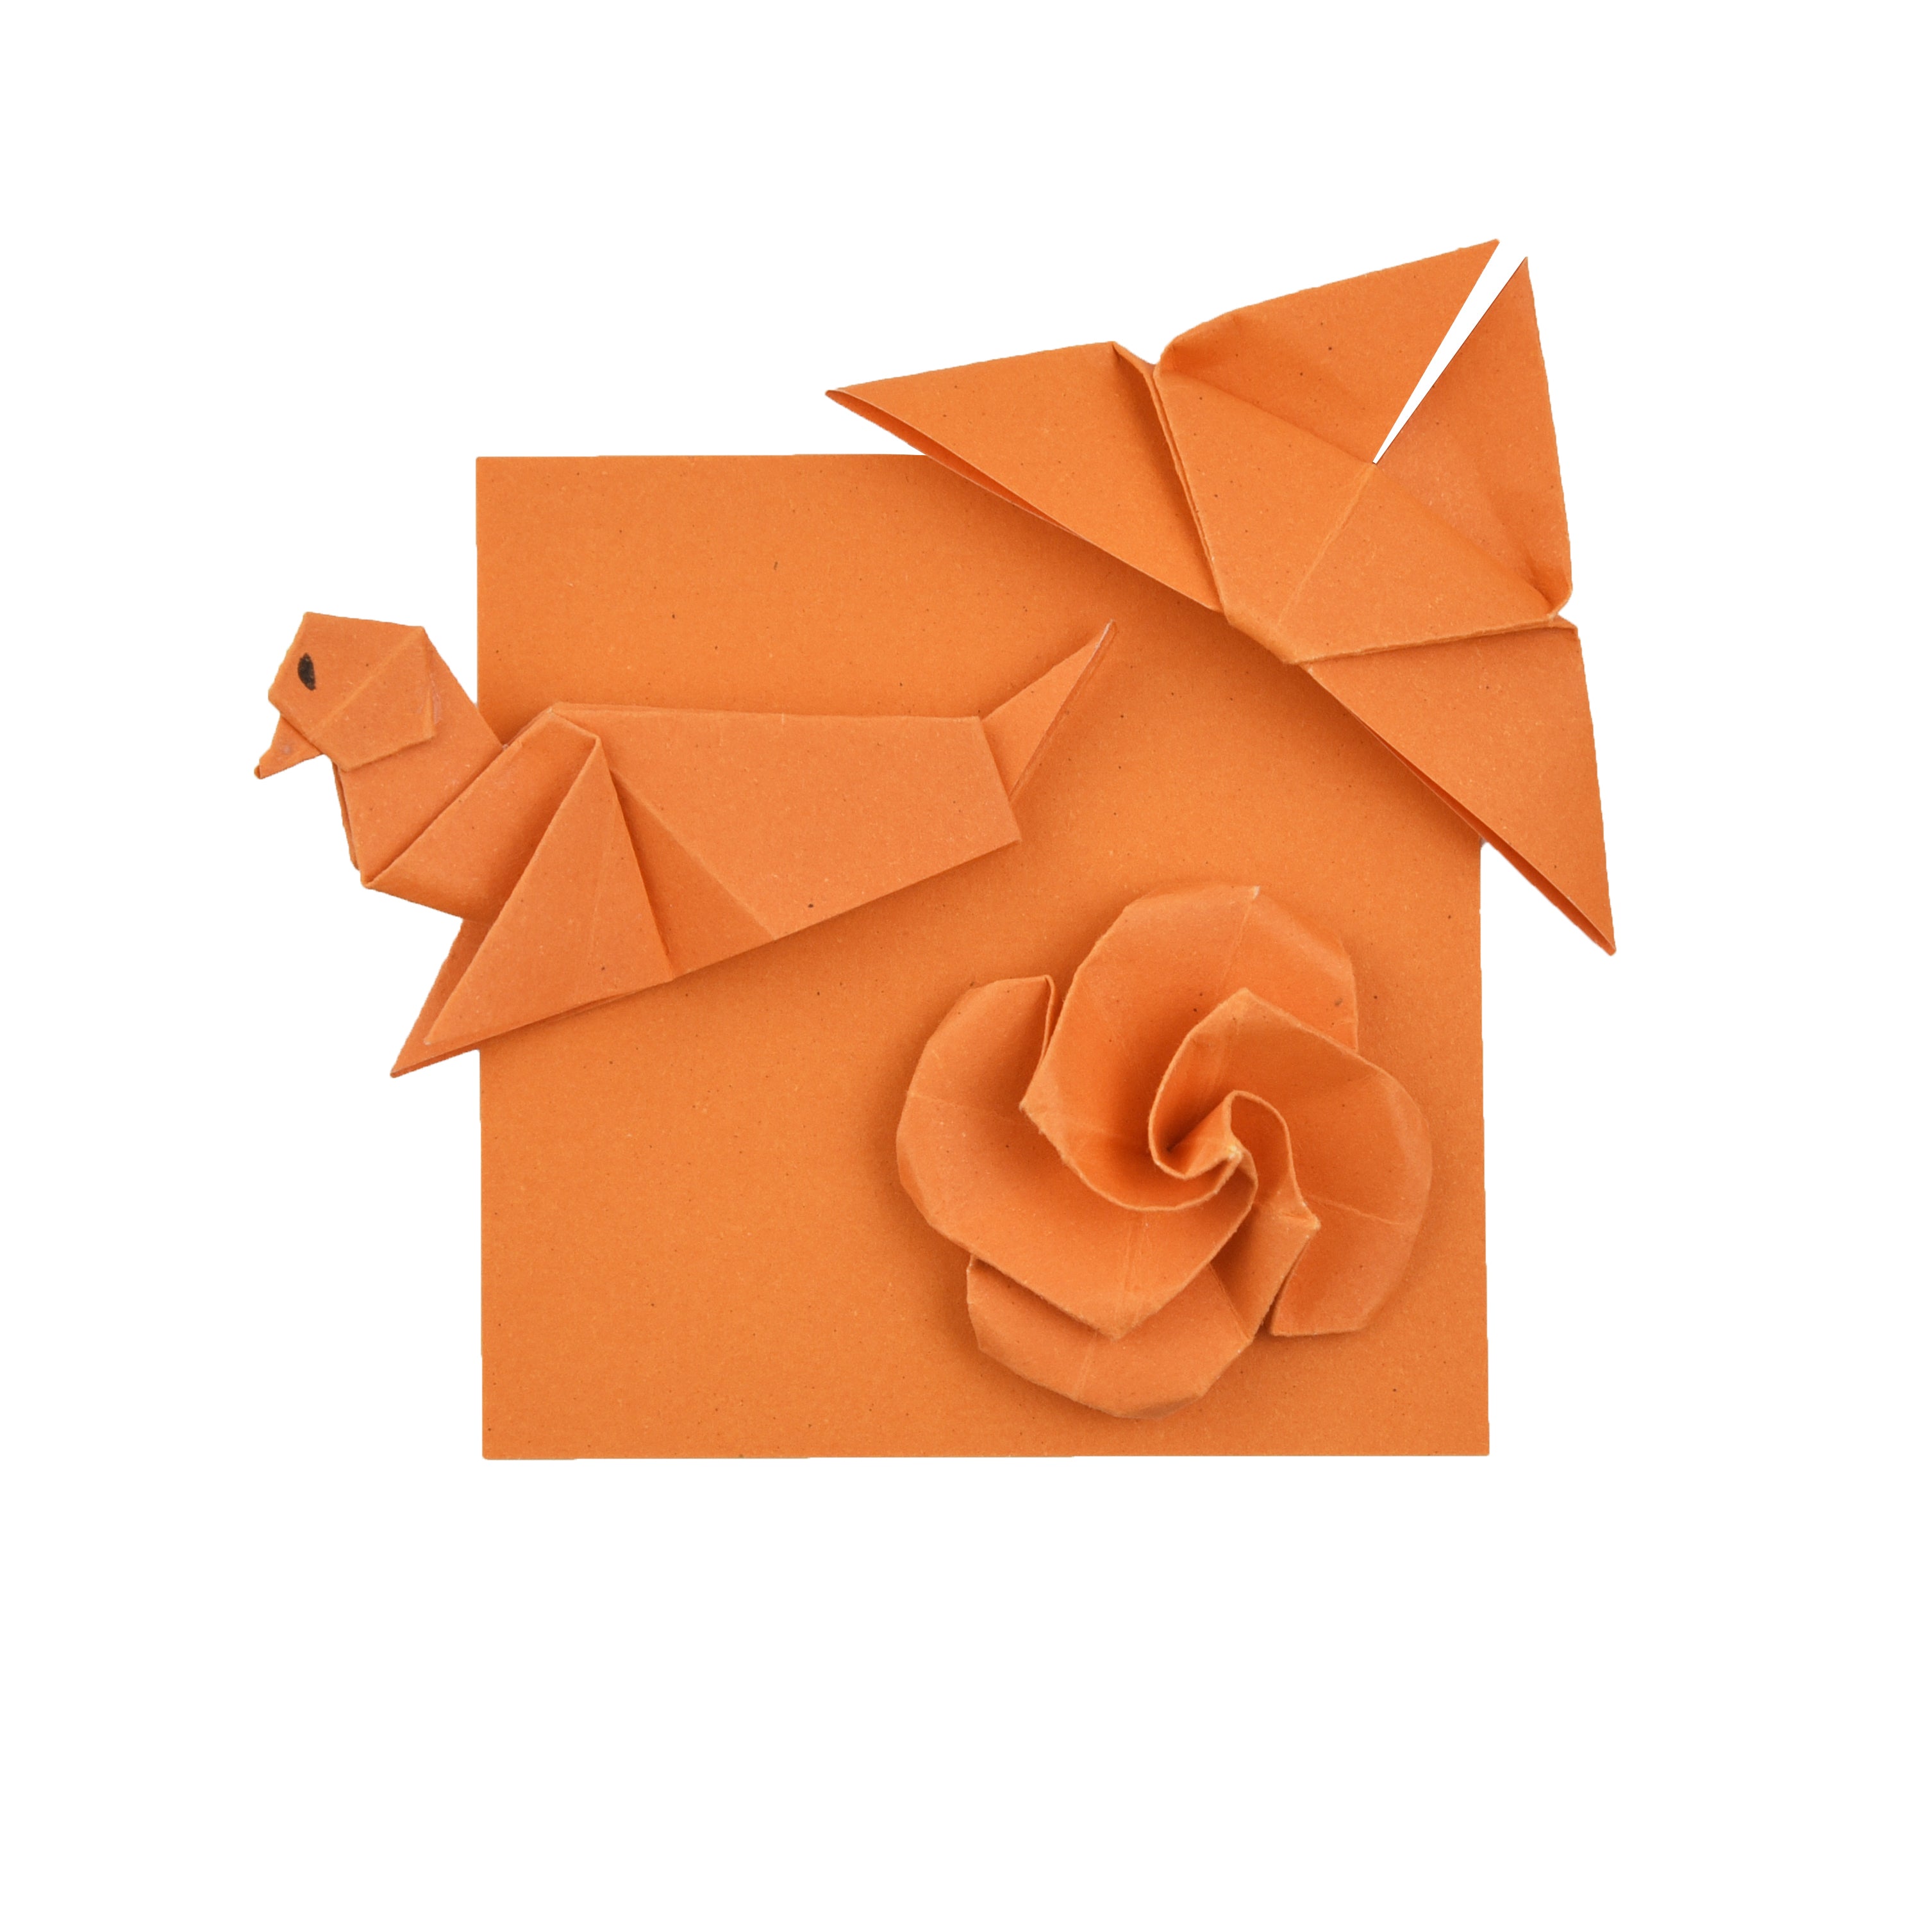 100 Hojas de Papel Origami - 6x6 pulgadas - Paquete de Papel Cuadrado para Plegar, Grullas de Origami y Decoración - S03